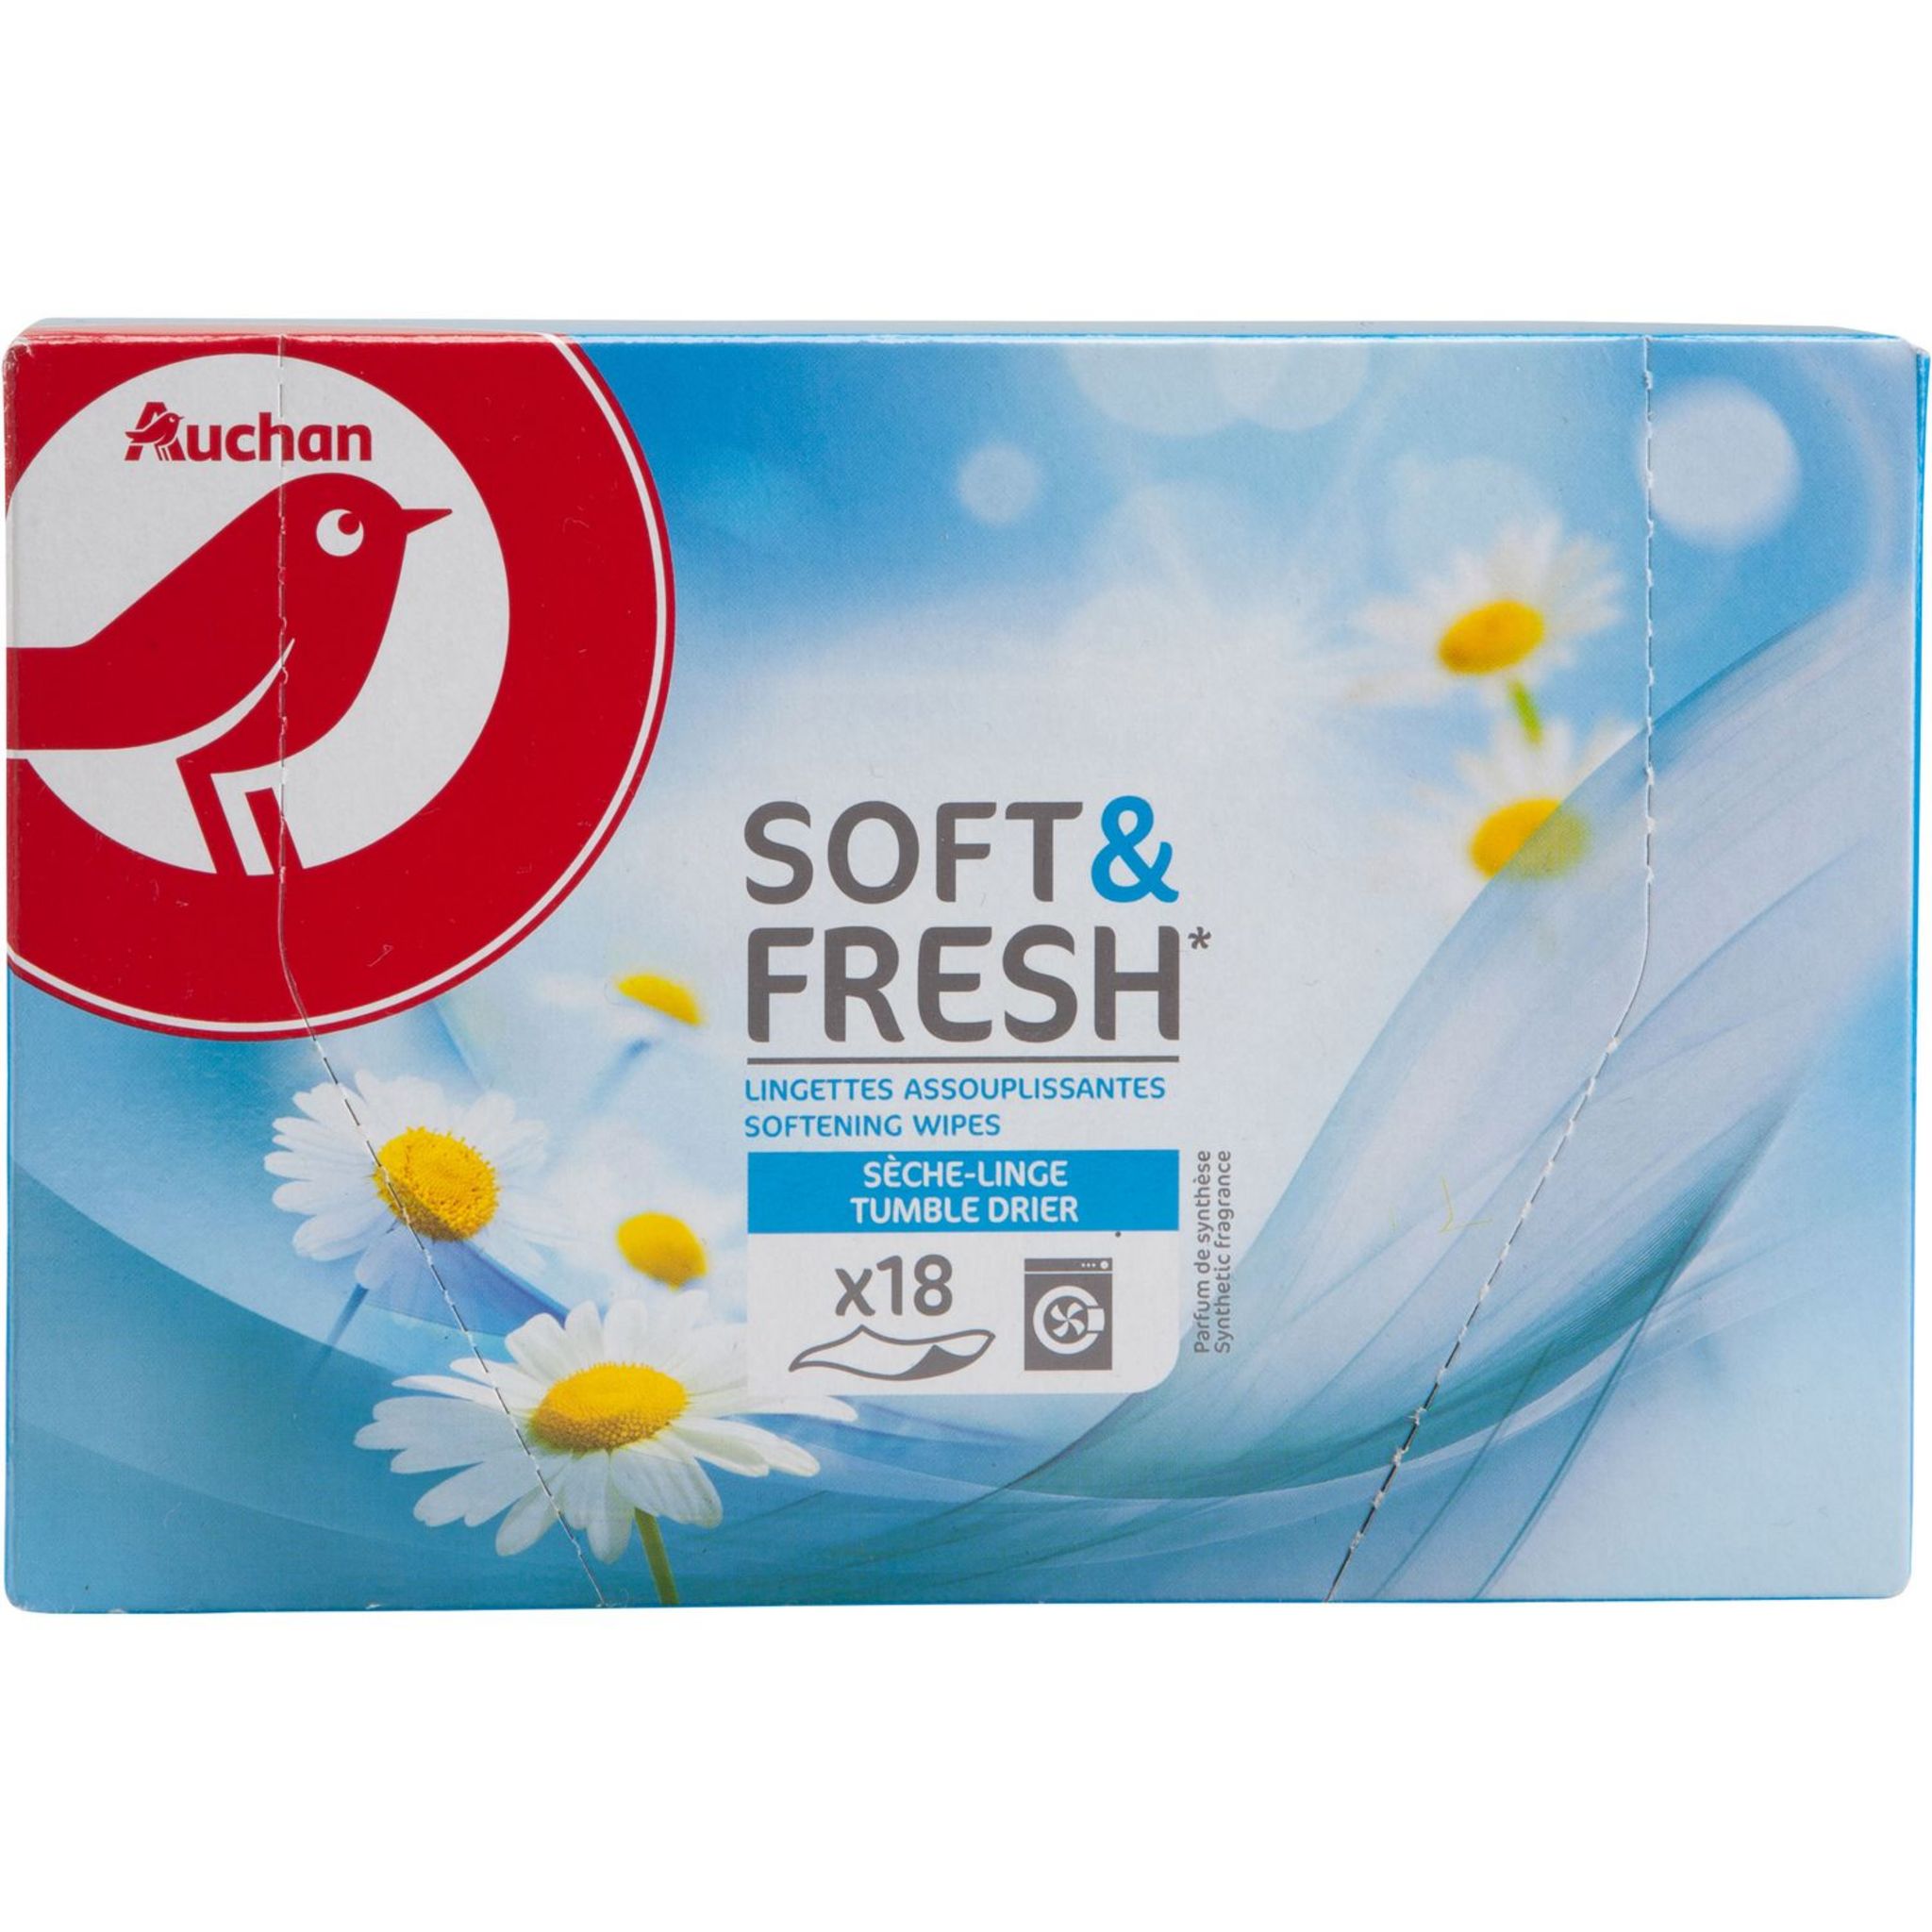 AUCHAN Soft & fresh lingettes assouplissantes sèche-linge 18